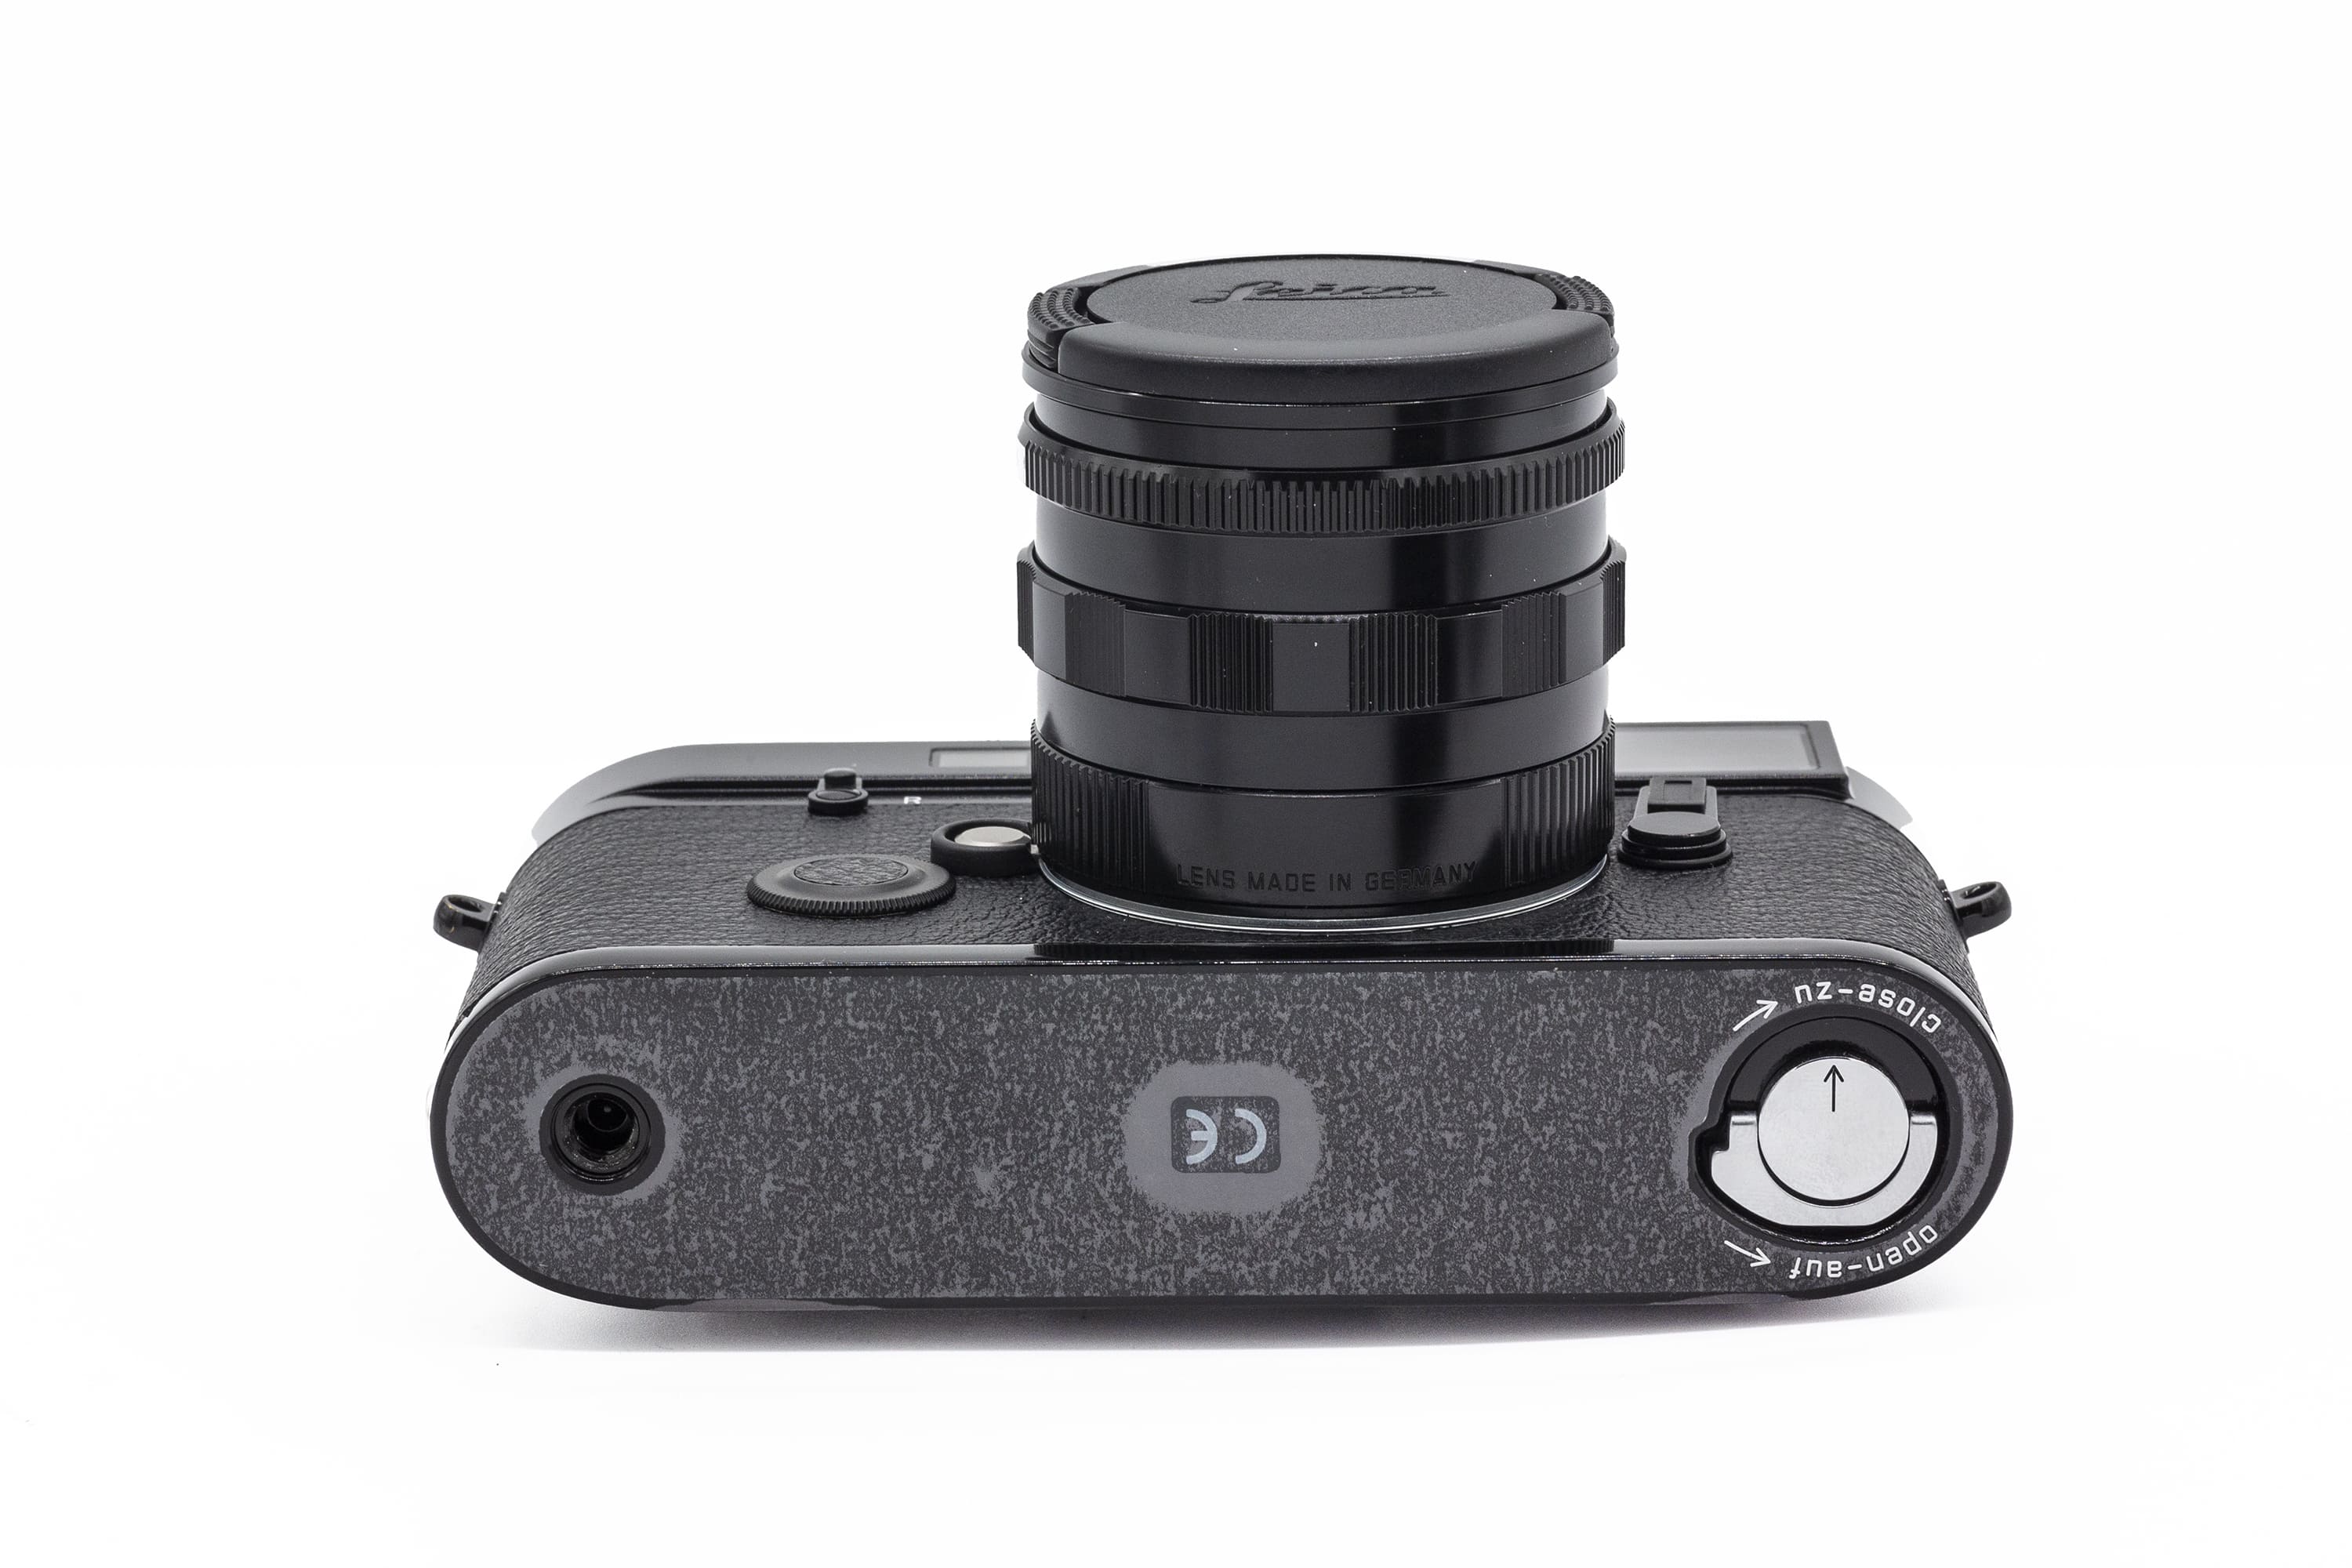 Leica M6 Millenium + Summilux 50mm 1.4 Black Paint